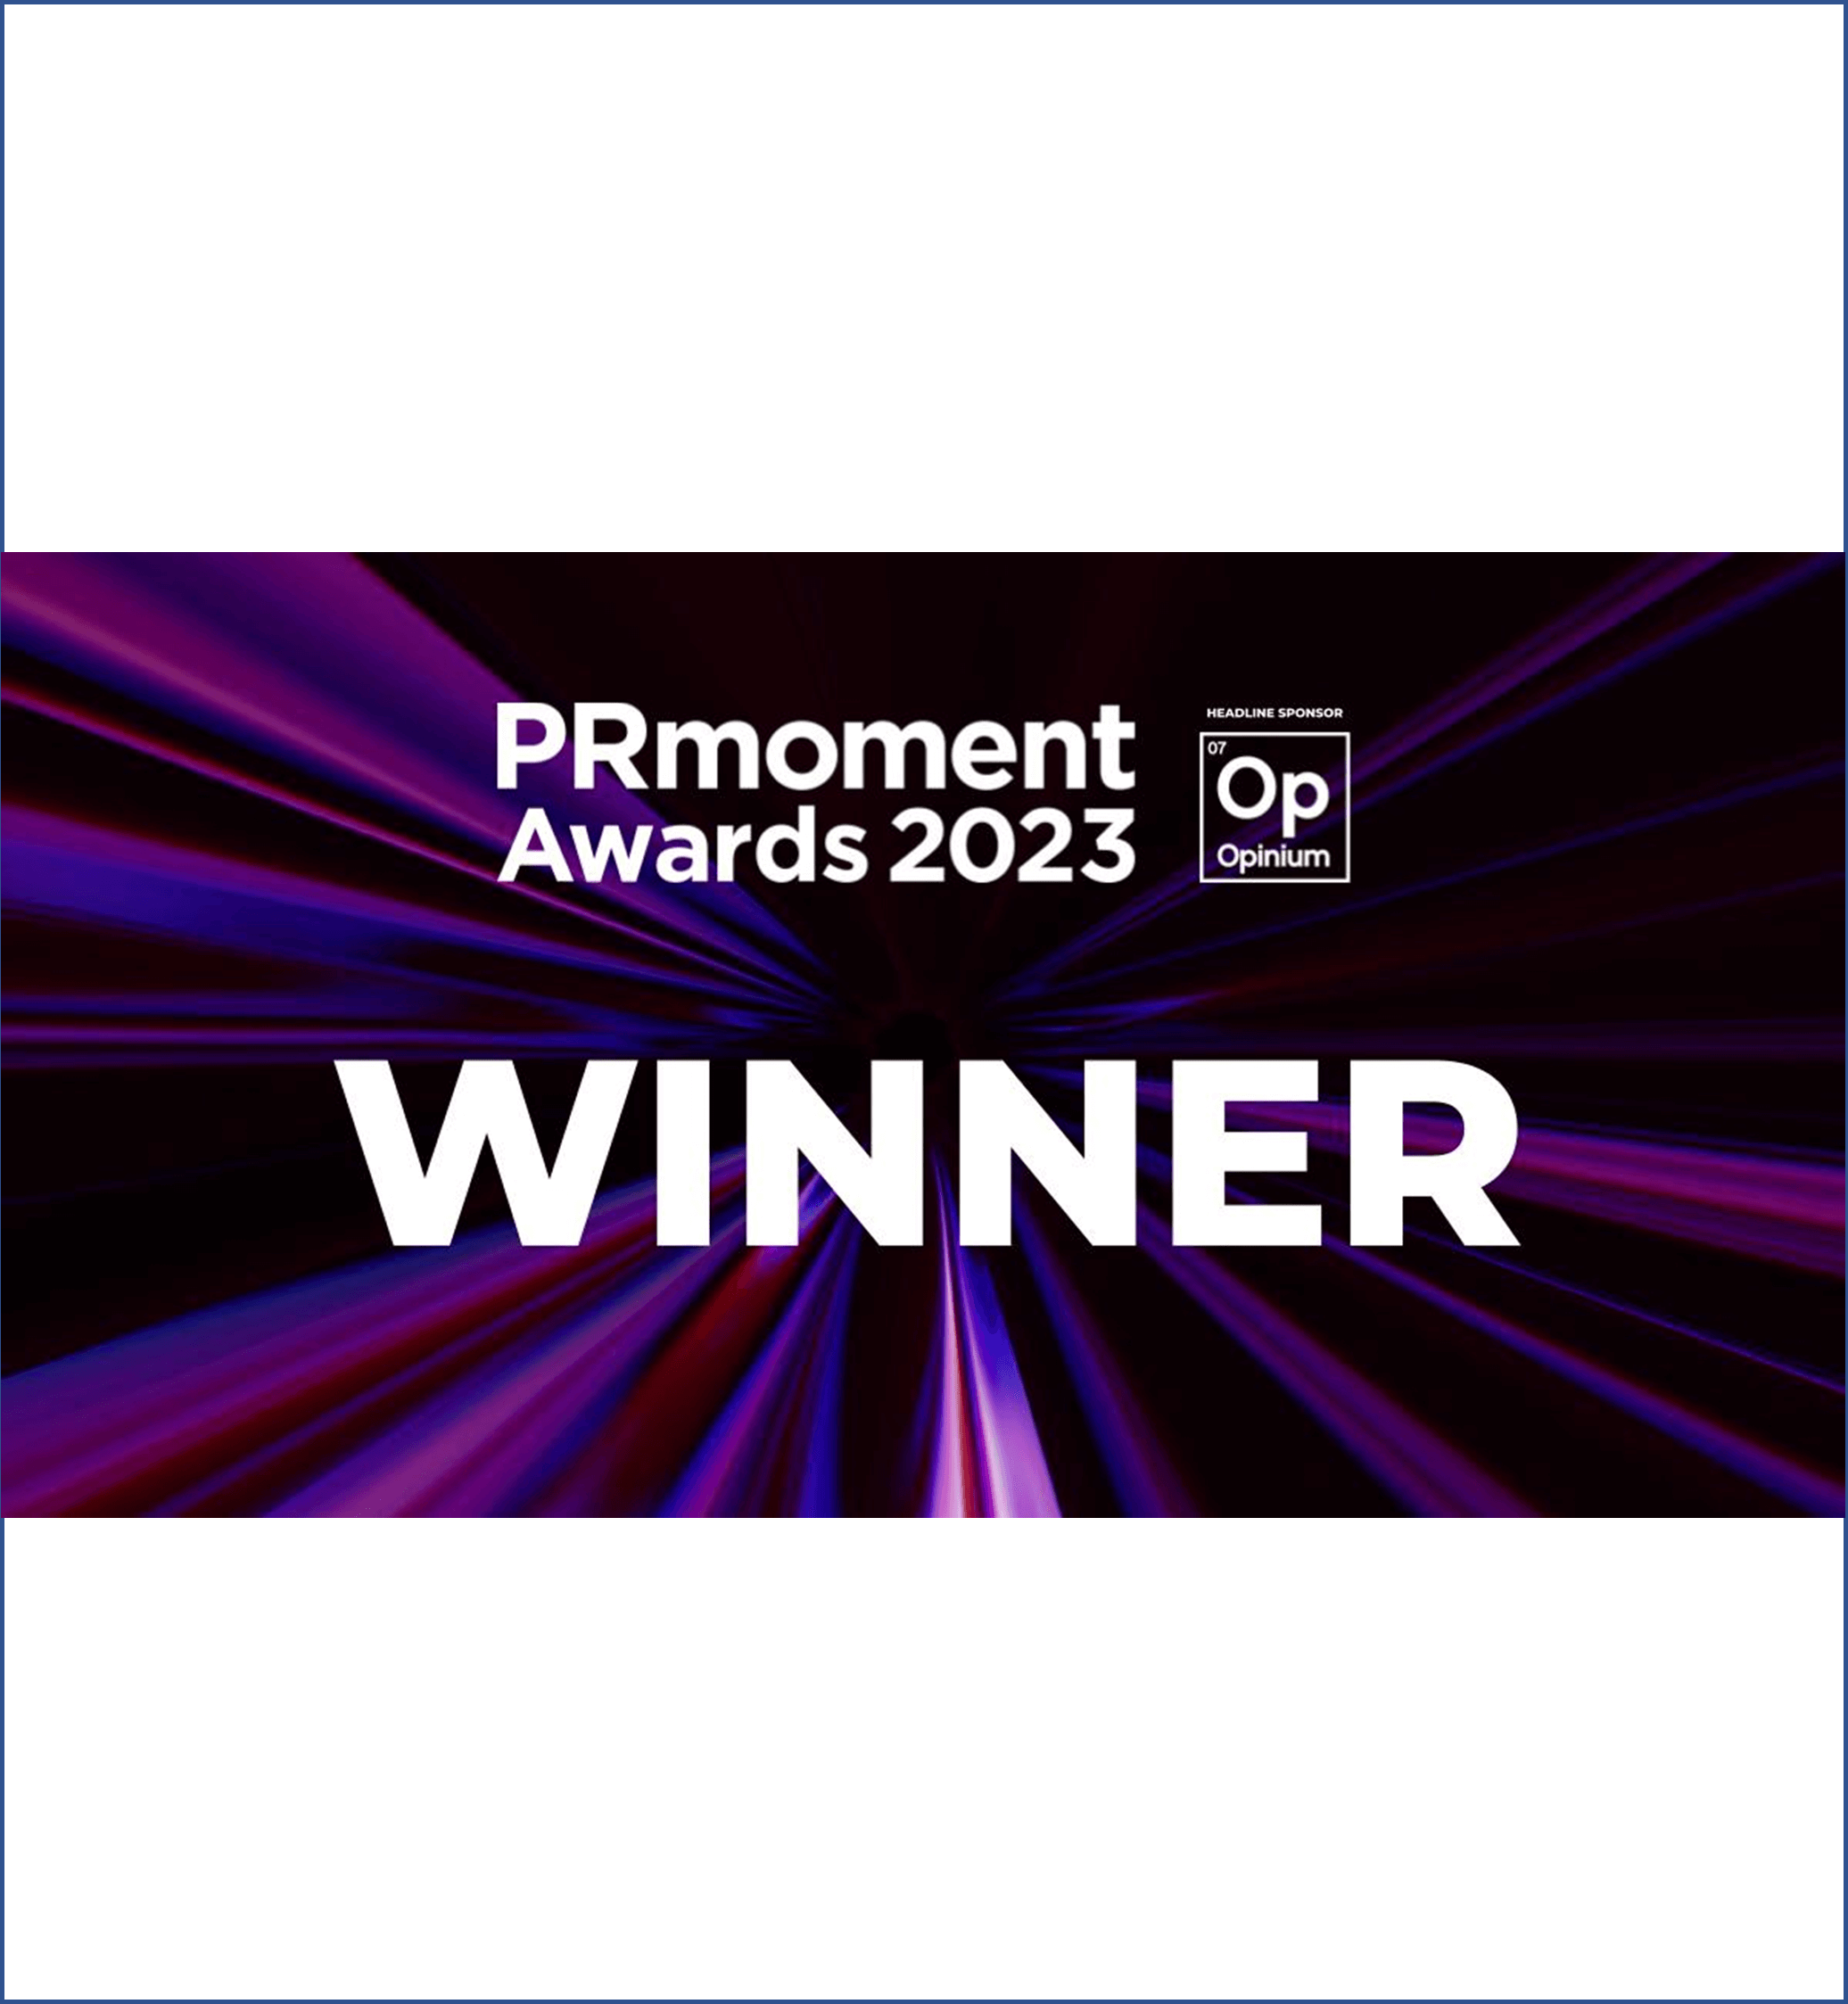 Winners logo for PRmoment 2023 awards.